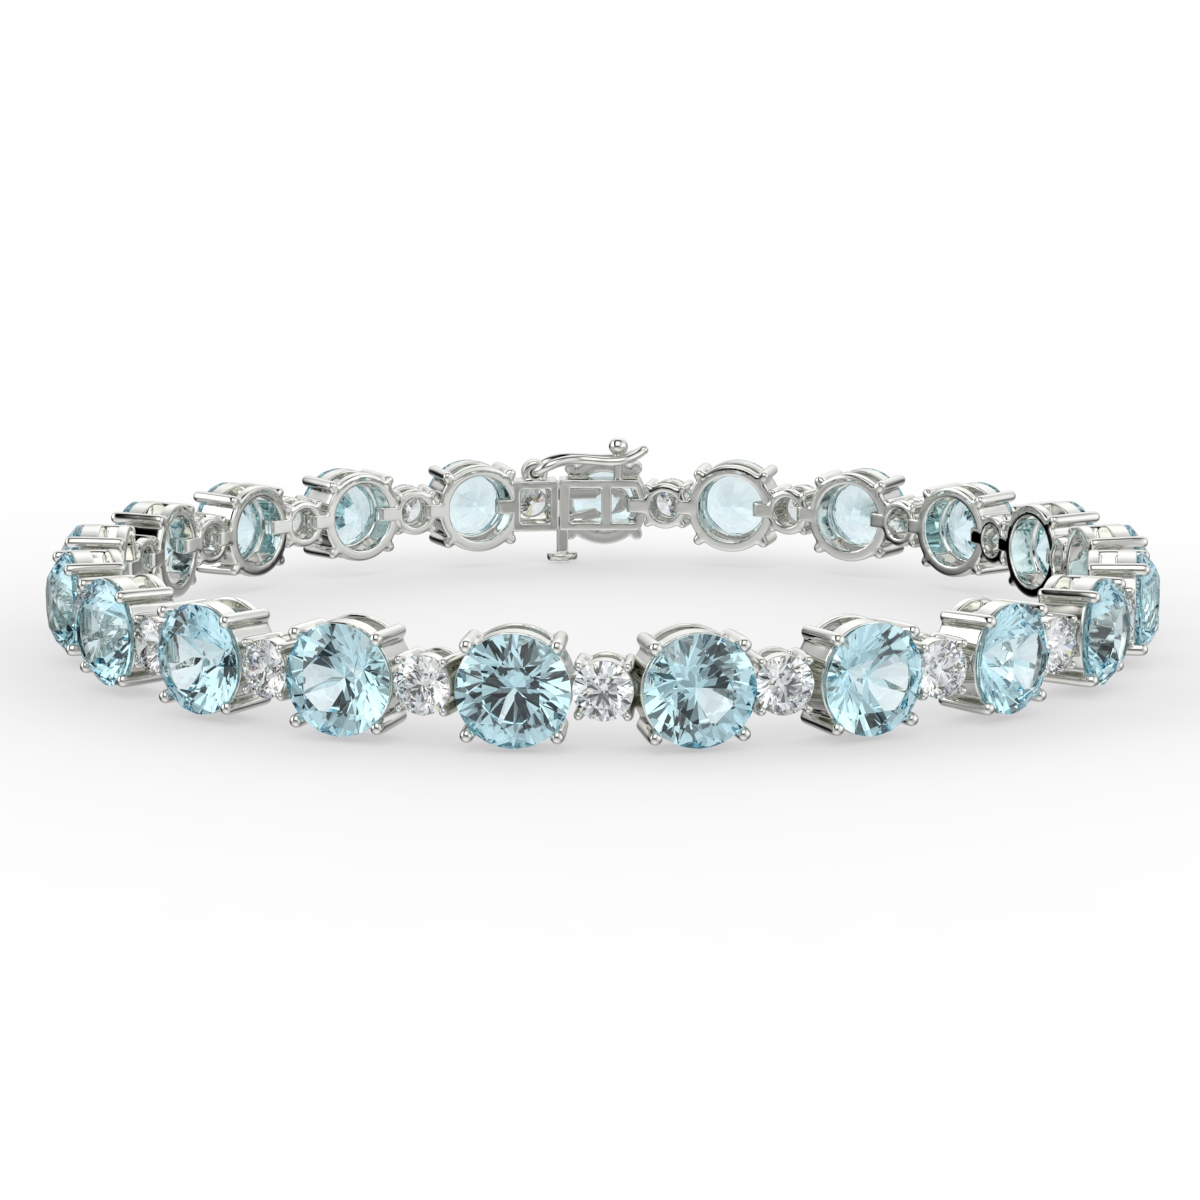 Scottish Sea Glass - Sea foam Bracelet with Aquamarine Crystal Beads. -  onemoregift.co.uk